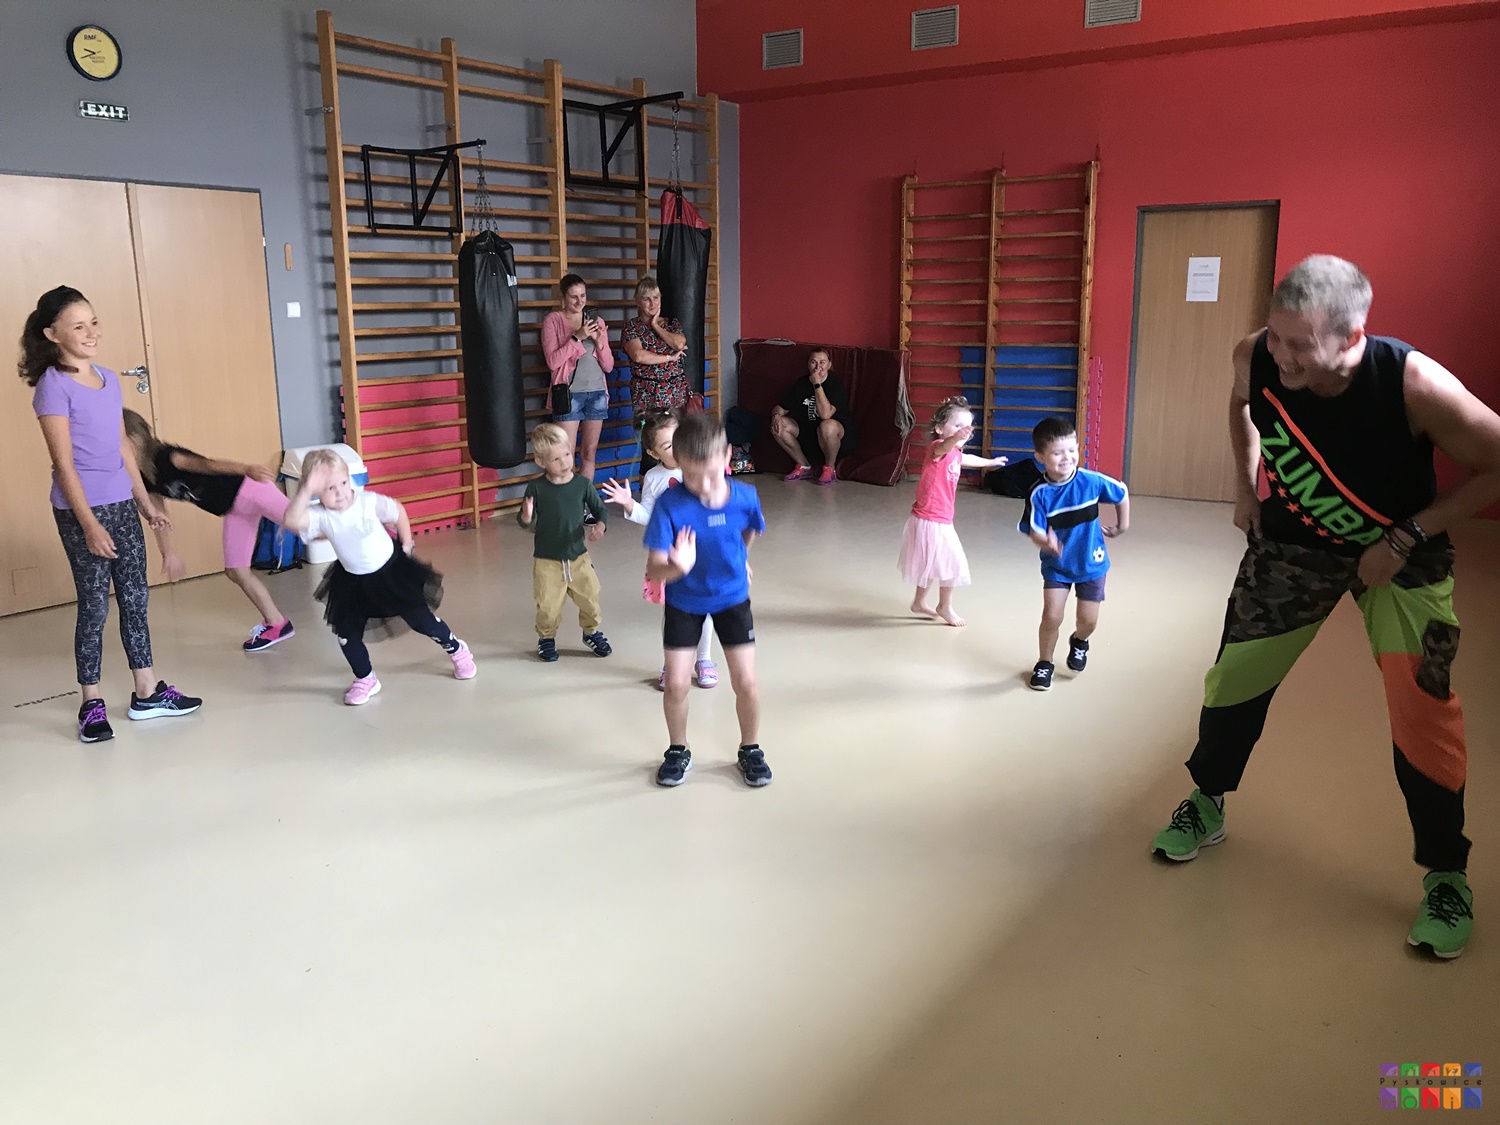 Zdjęcie przedstawiające tańczące dzieci w salce fitness. W tle widać drabinki oraz materace